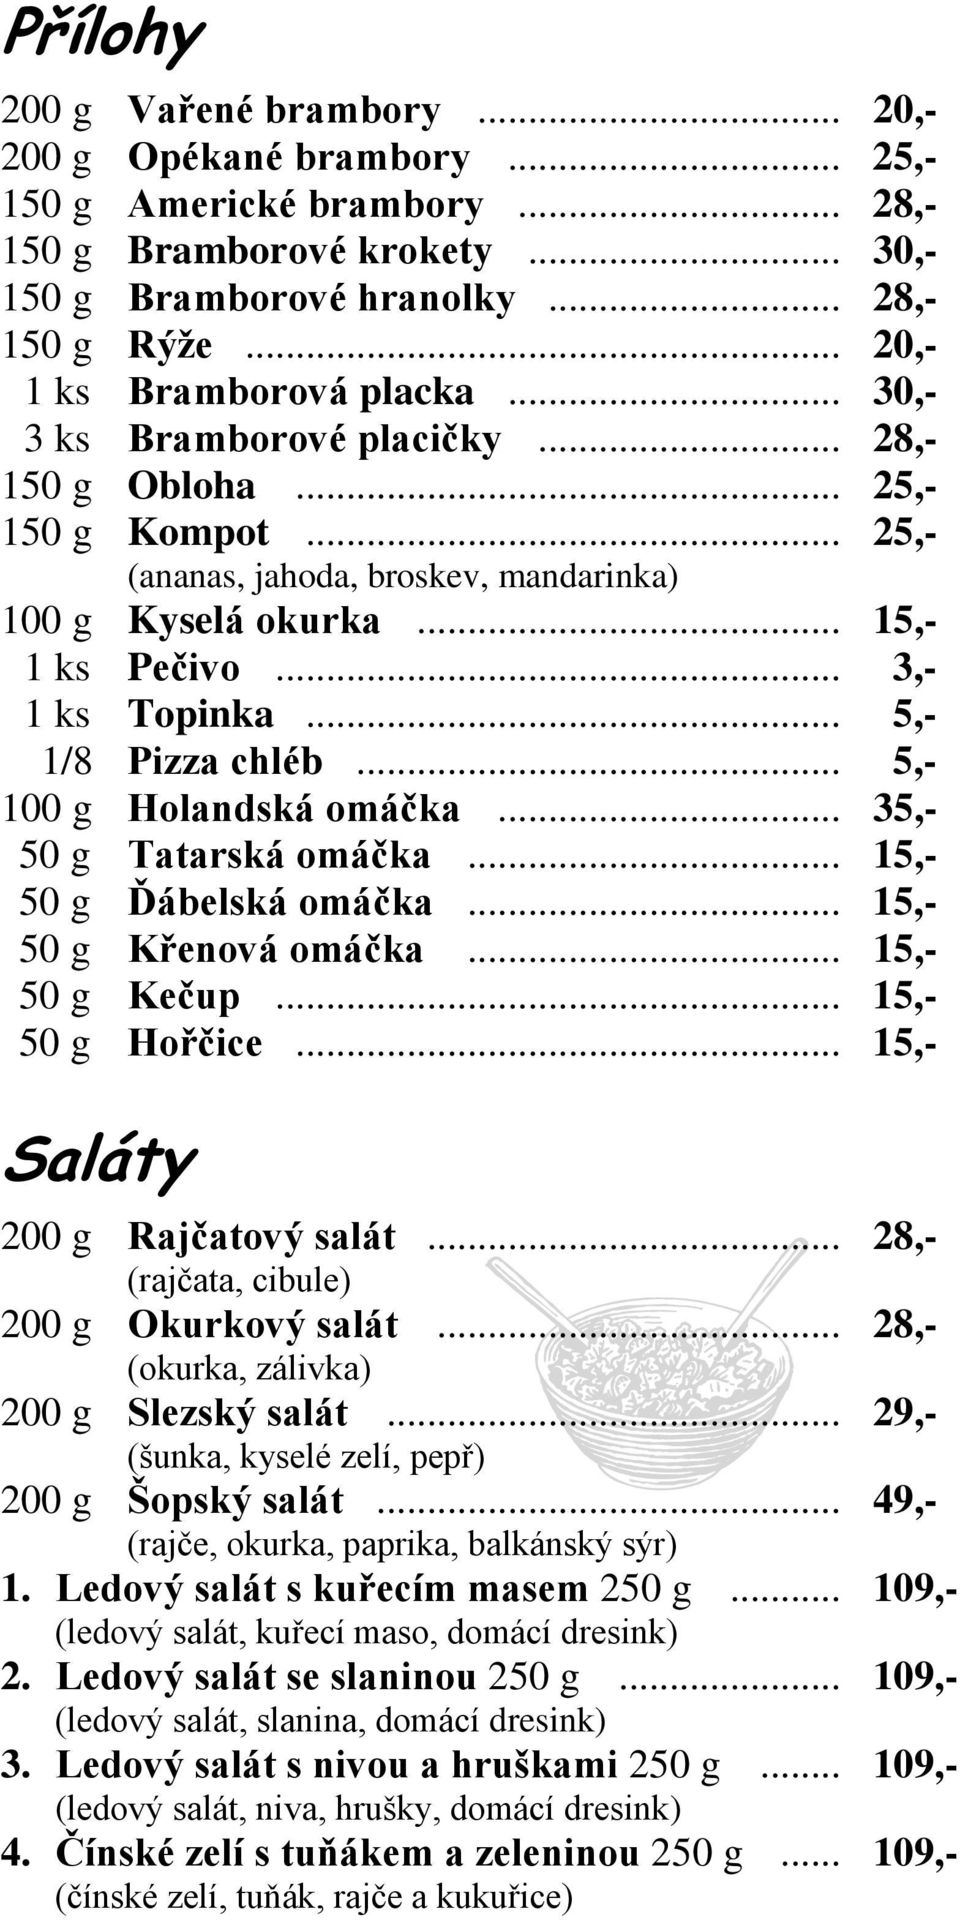 .. 3,- 1 ks Topinka... 5,- 1/8 Pizza chléb... 5,- 100 g Holandská omáčka... 35,- 50 g Tatarská omáčka... 15,- 50 g Ďábelská omáčka... 15,- 50 g Křenová omáčka... 15,- 50 g Kečup... 15,- 50 g Hořčice.